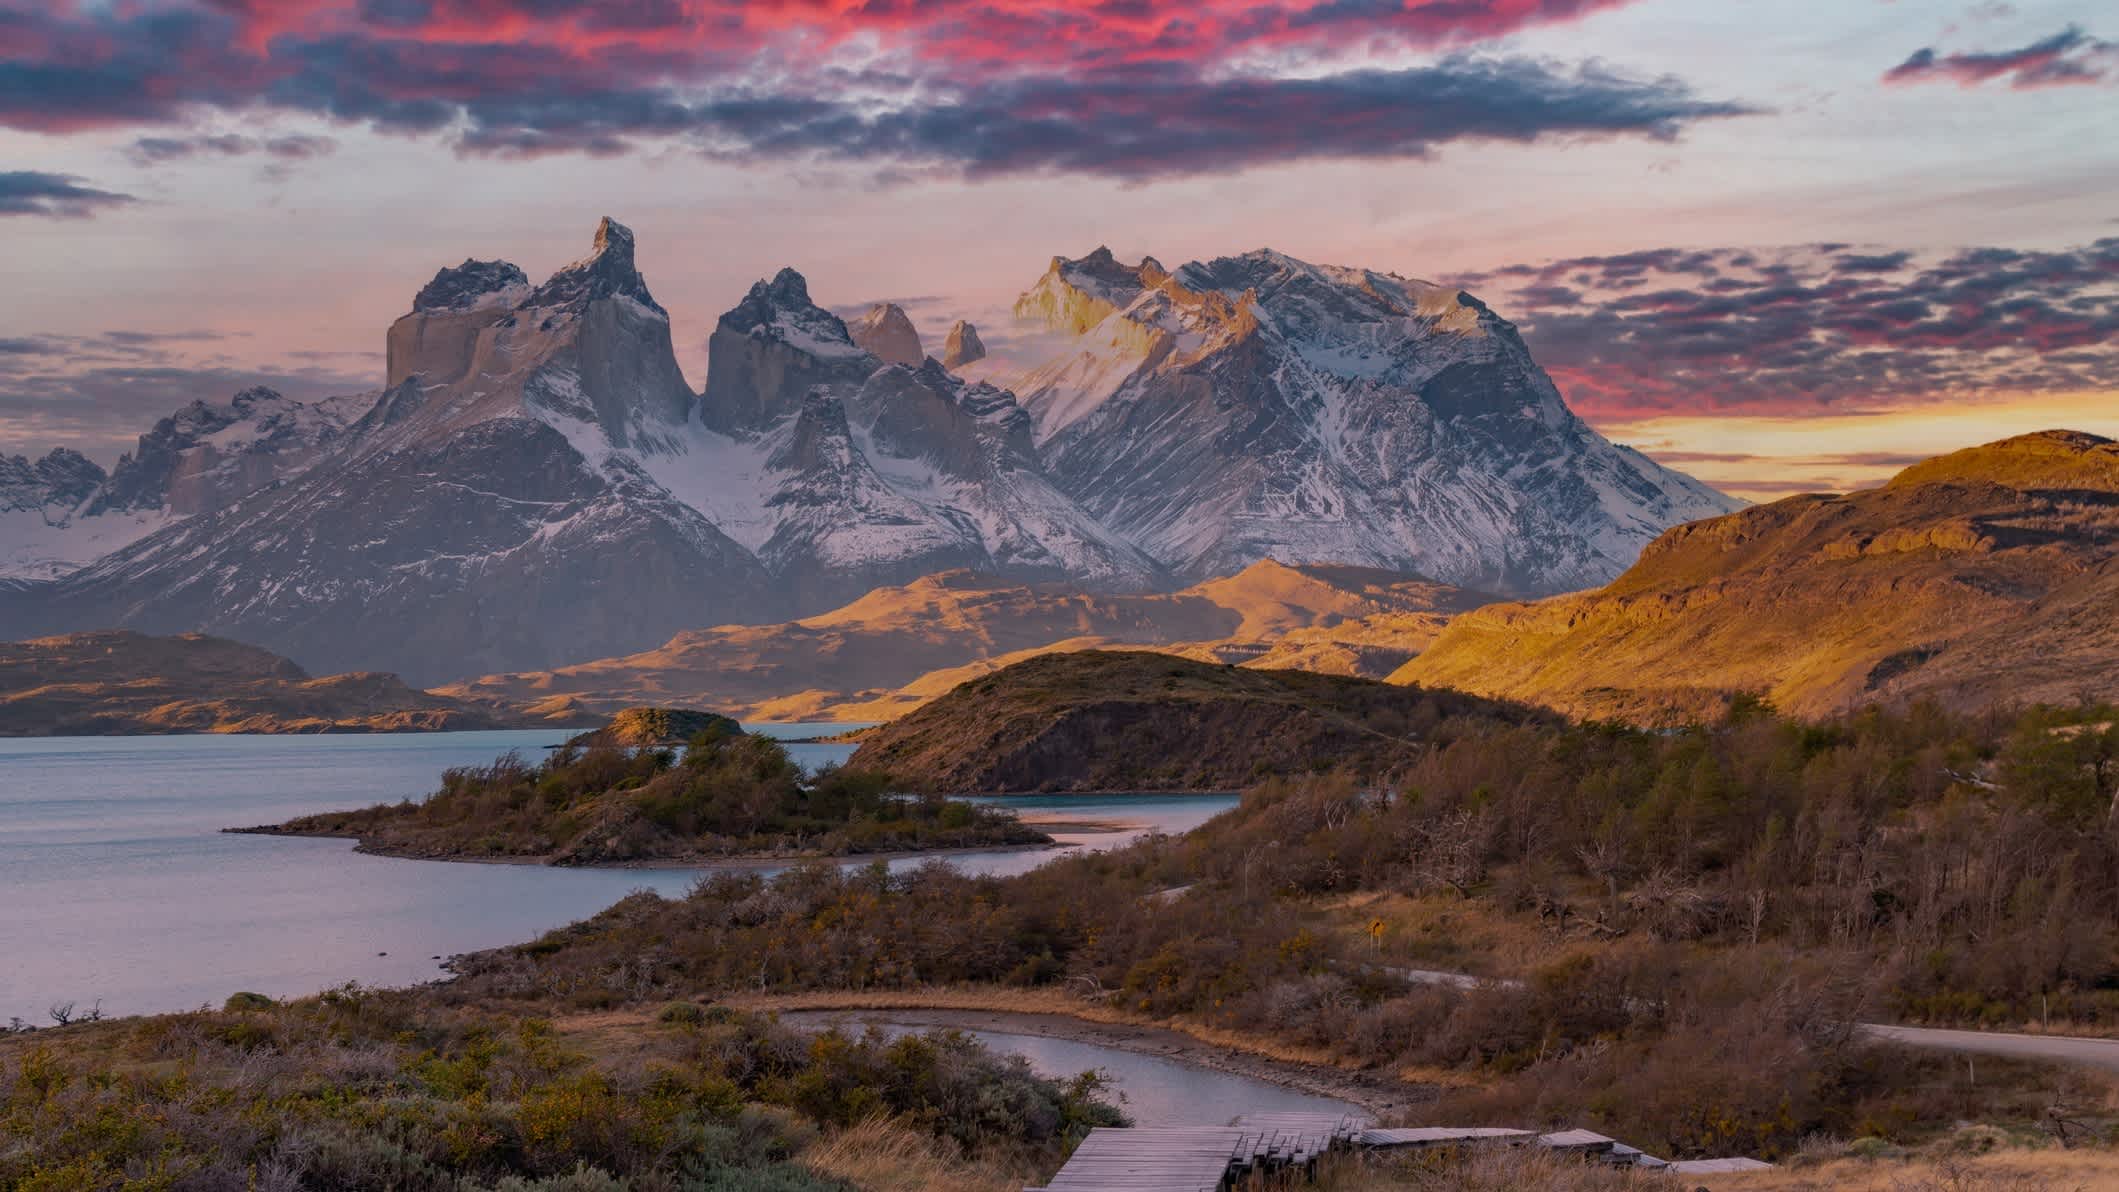 Reisen Sie auf Ihrer Südamerika Rundreise auch nach Patagonien